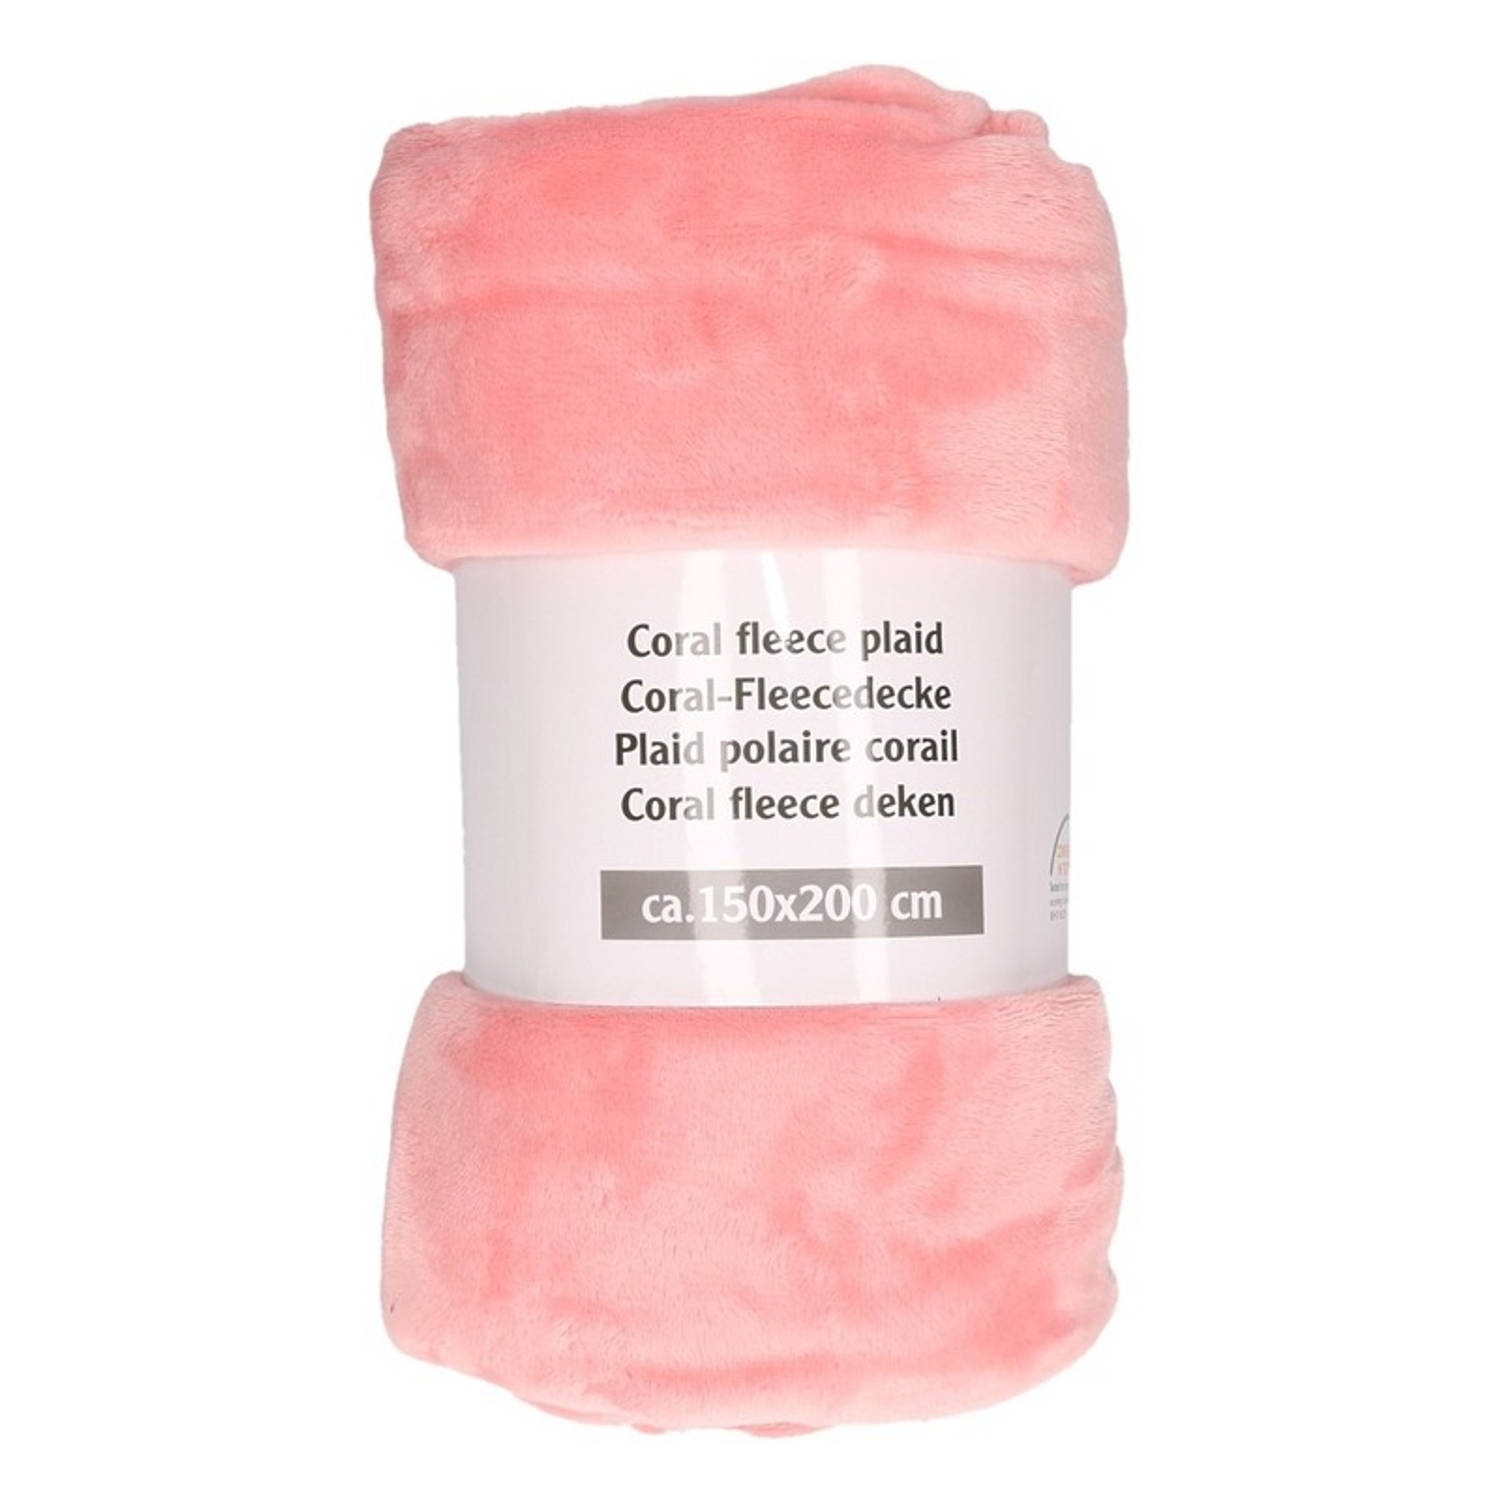 markering spuiten campagne Zalm roze warme fleece dekens 150 x 200 cm - Plaids | Blokker